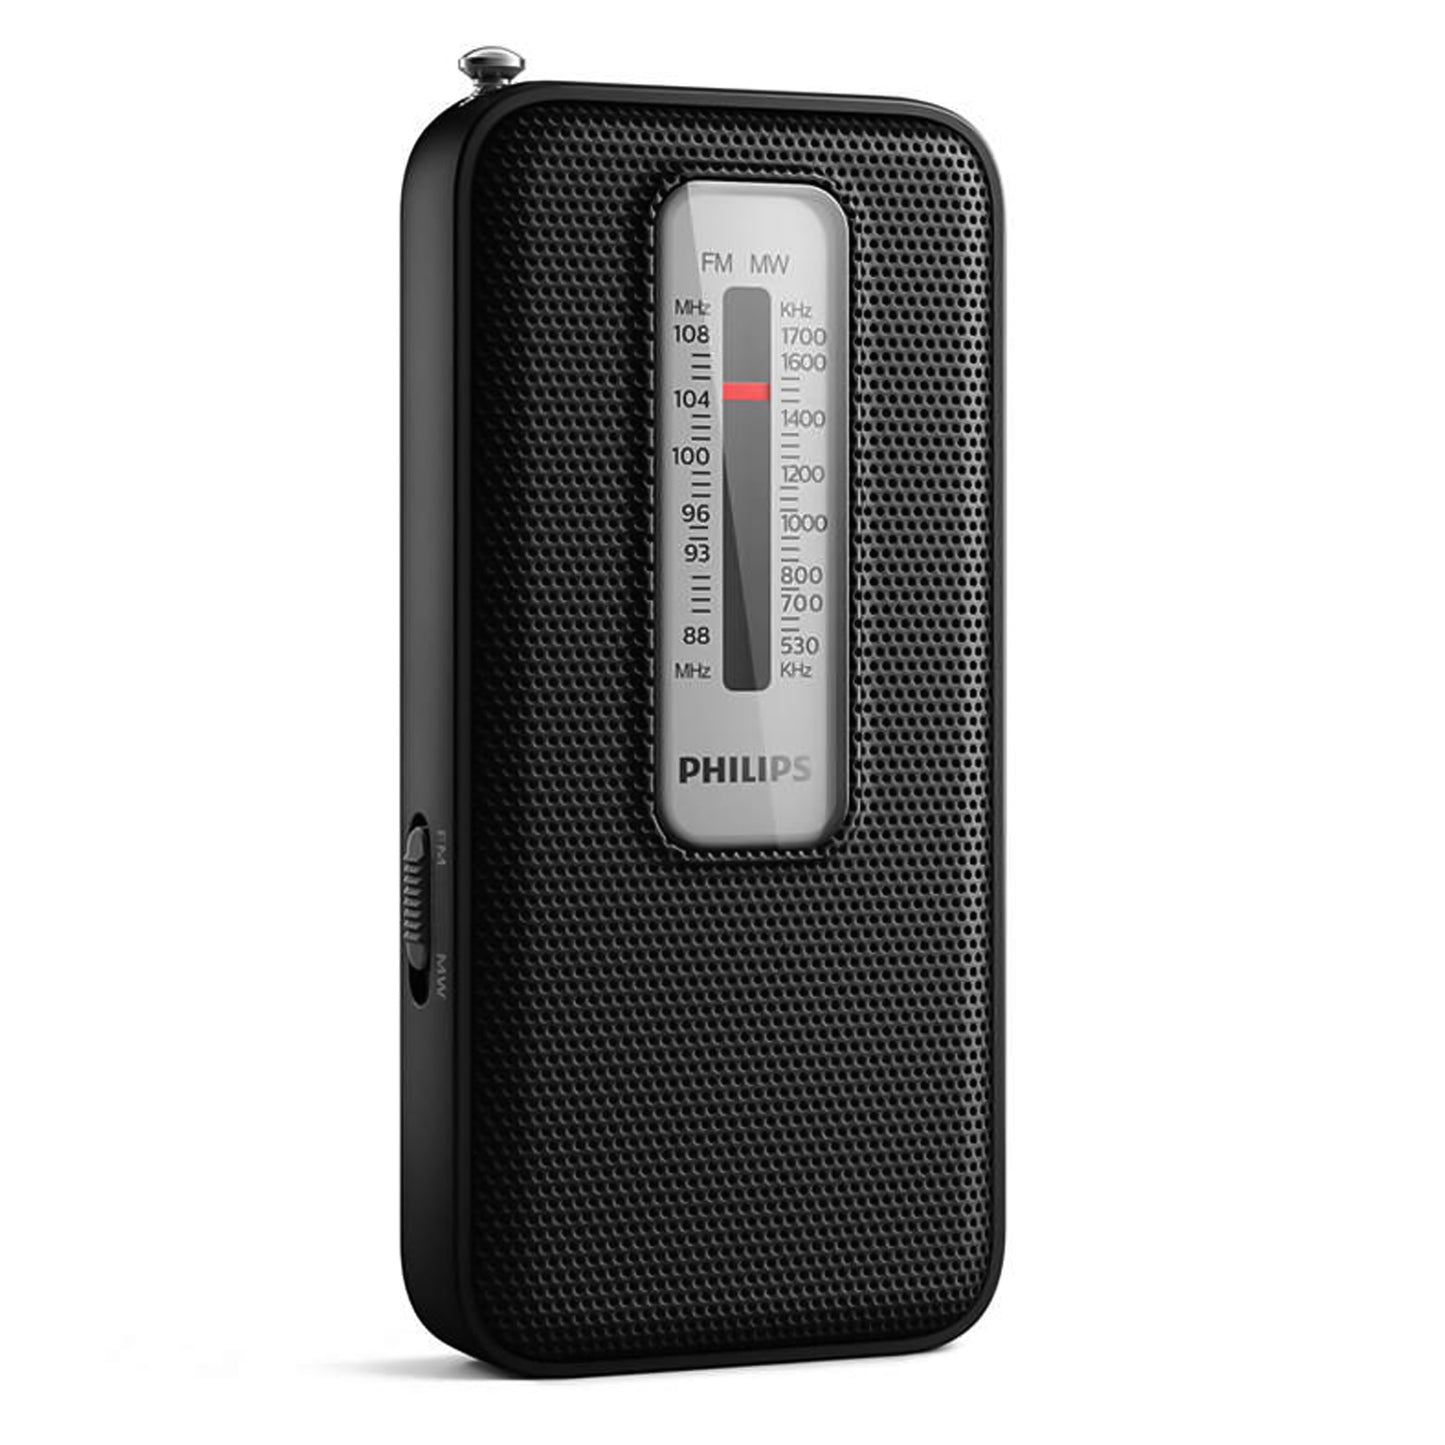 Philips Pocket Classic Radio FM MW portatile e tascabile con antenna retrattile, altoparlante mono integrato, ingresso cuffie jack 3,5mm